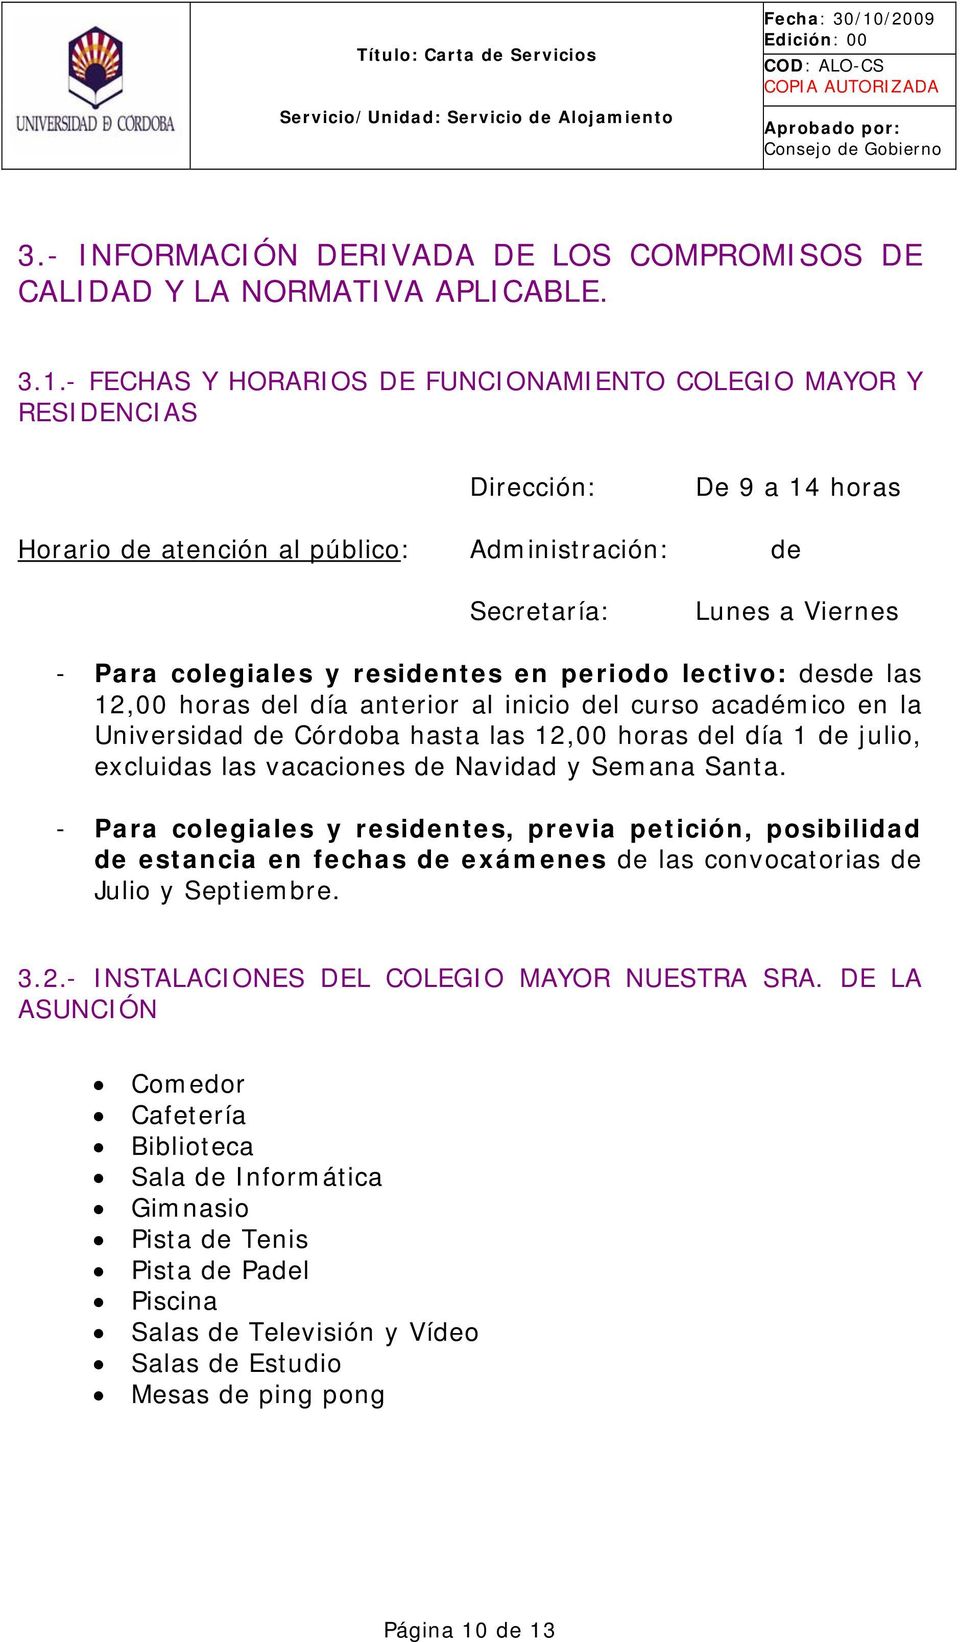 residentes en periodo lectivo: desde las 12,00 horas del día anterior al inicio del curso académico en la Universidad de Córdoba hasta las 12,00 horas del día 1 de julio, excluidas las vacaciones de